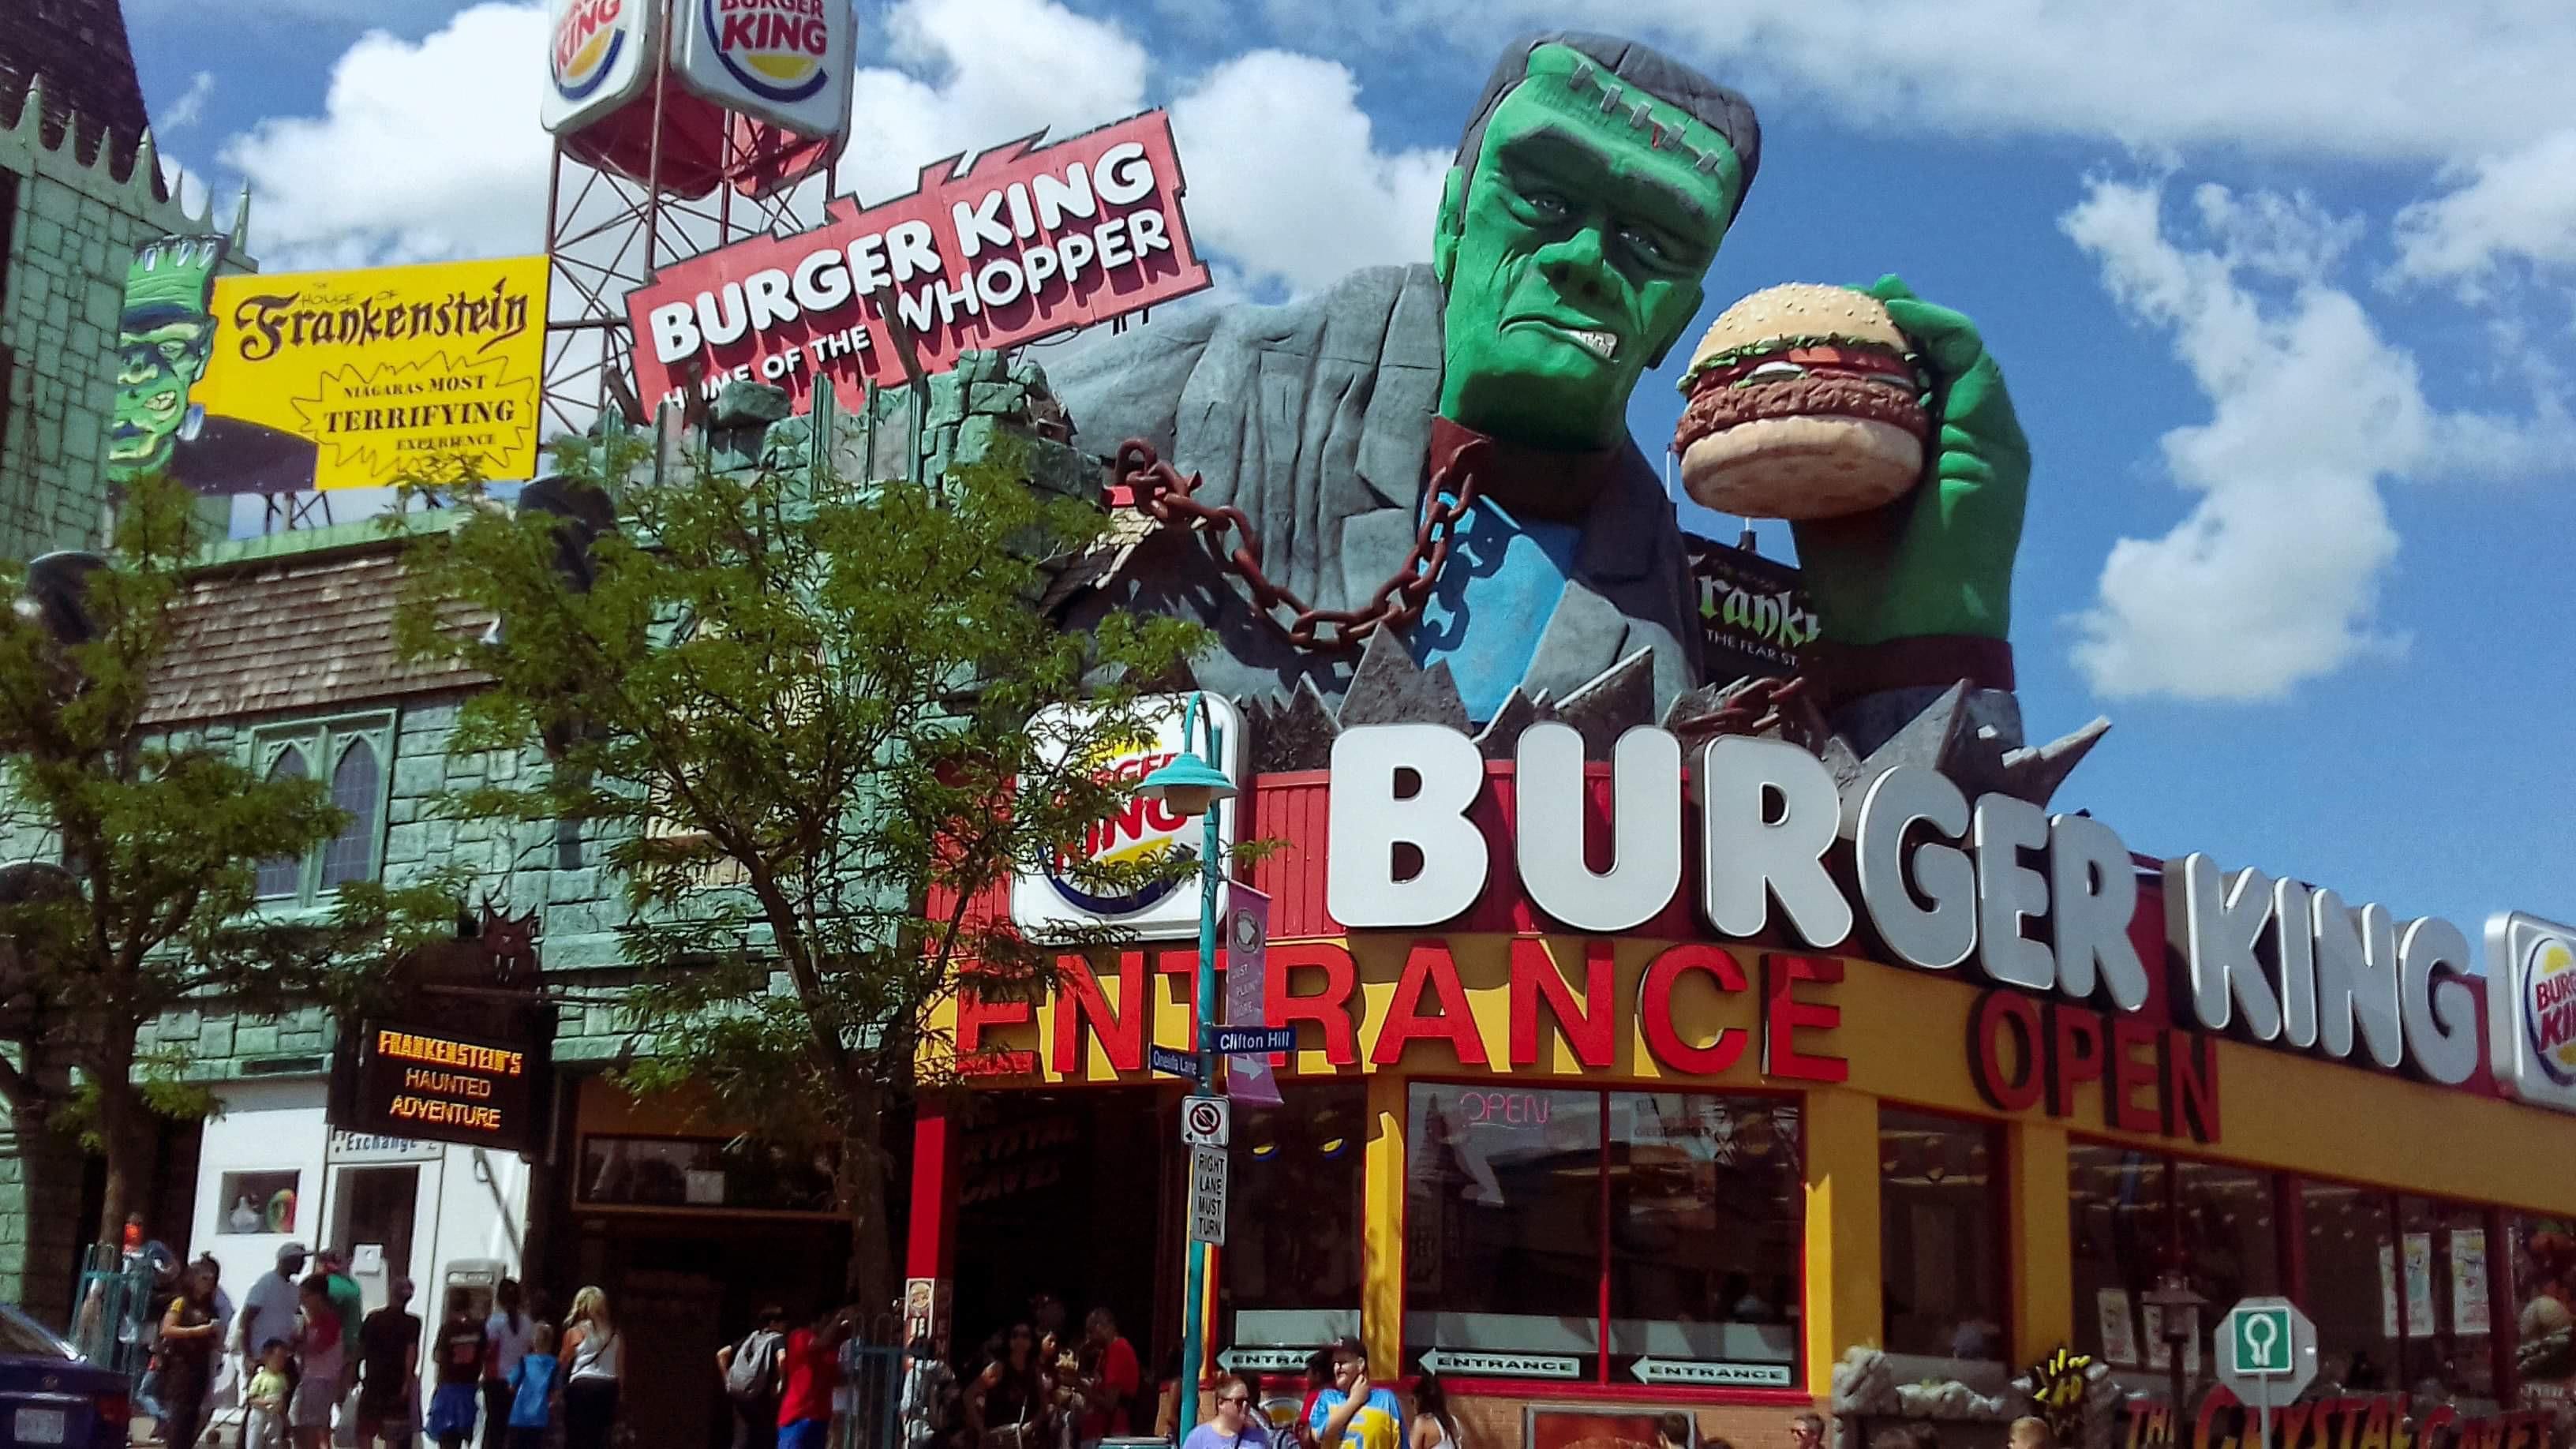 Burger King étterem egy forgalmas utcán tetején Frankeinstein szörnyével